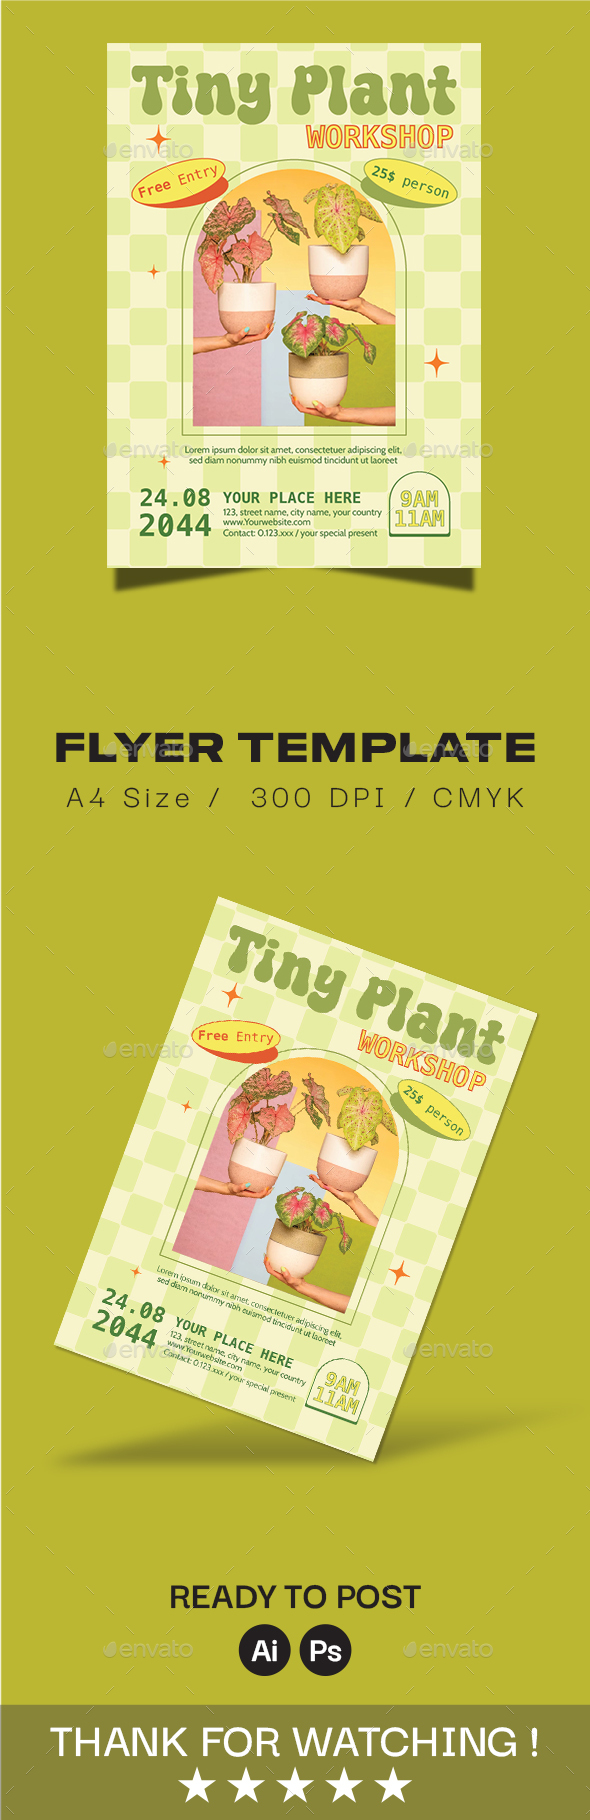 [DOWNLOAD]Tiny Plant Workshop Flyer